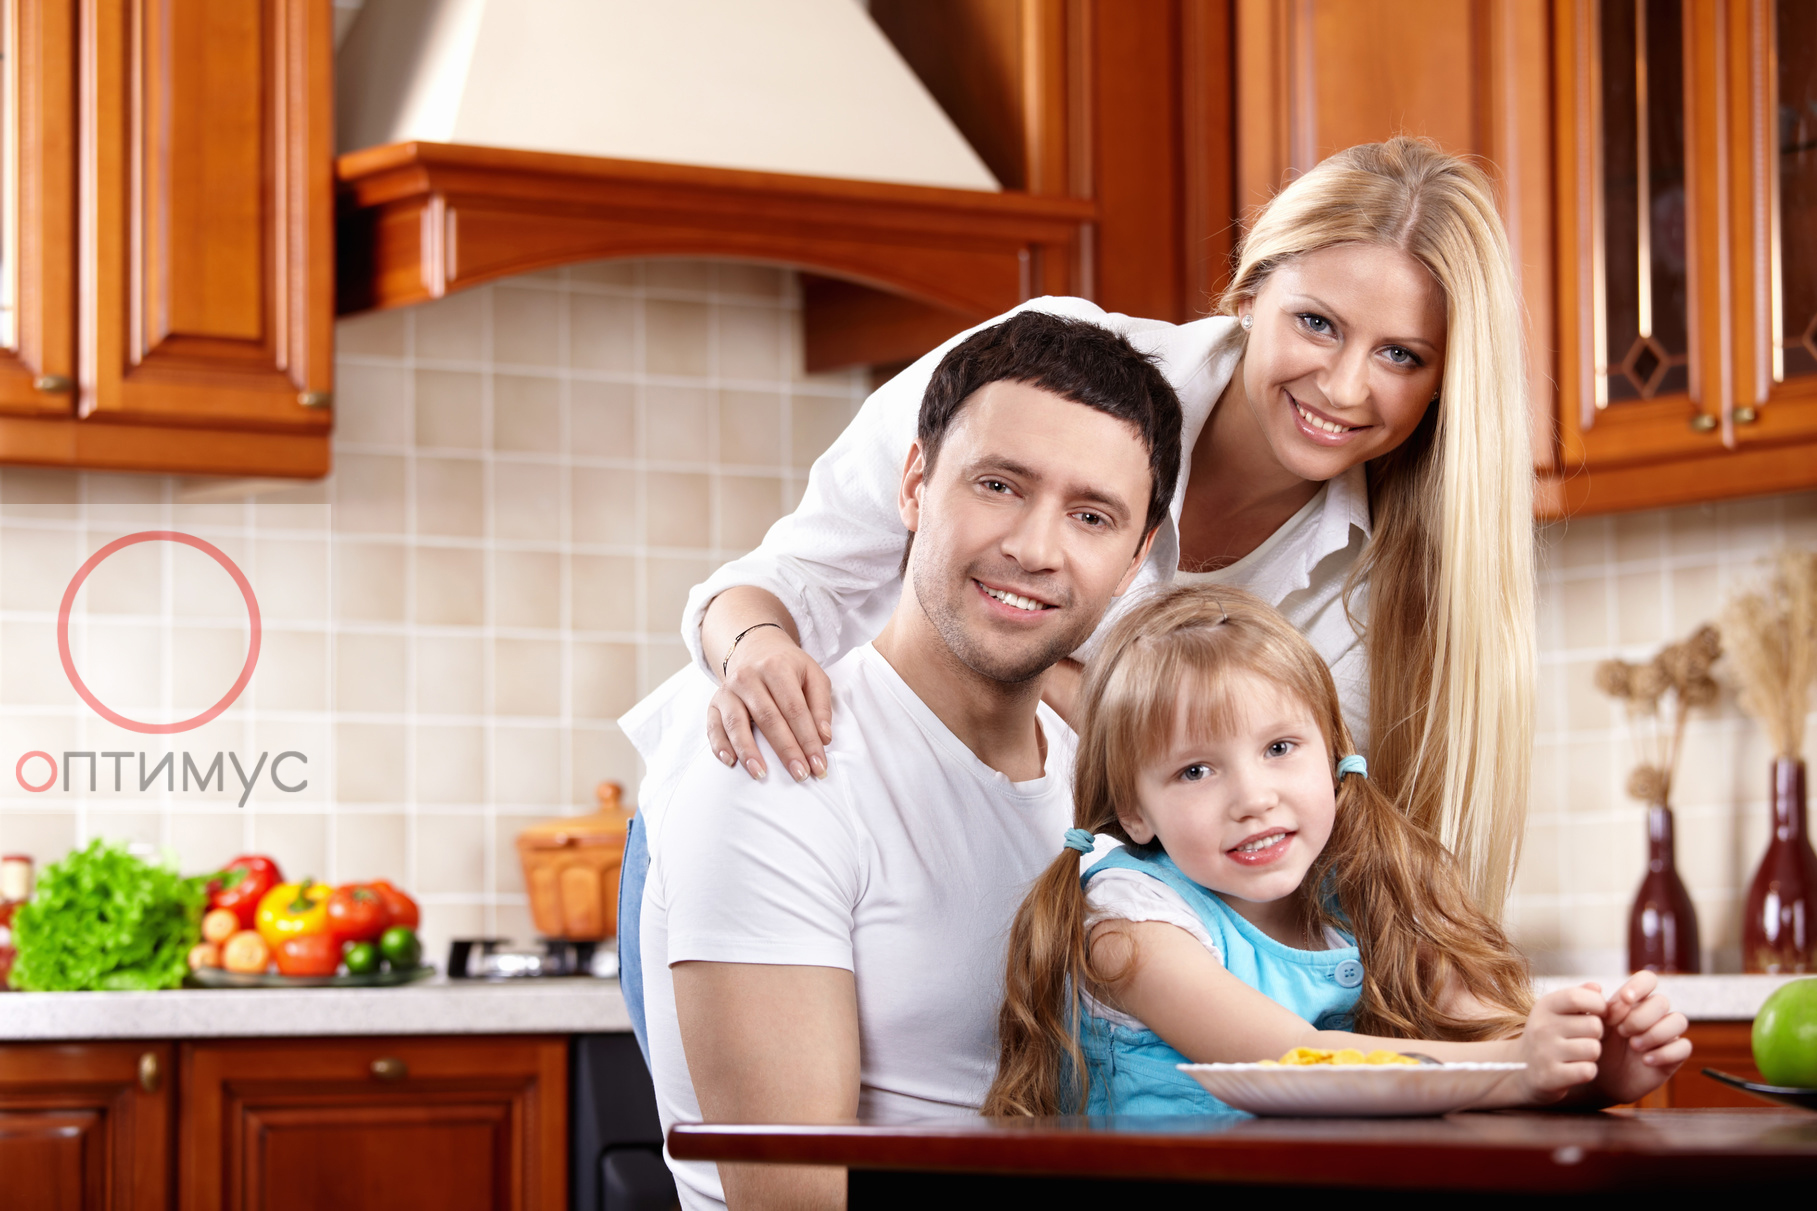 Семья беловых решила сделать ремонт на кухне. Фотосессия семьи на кухне. Счастливая семья на кухне. Семья с детьми на кухне. Семья на кухне красивый интерьер.